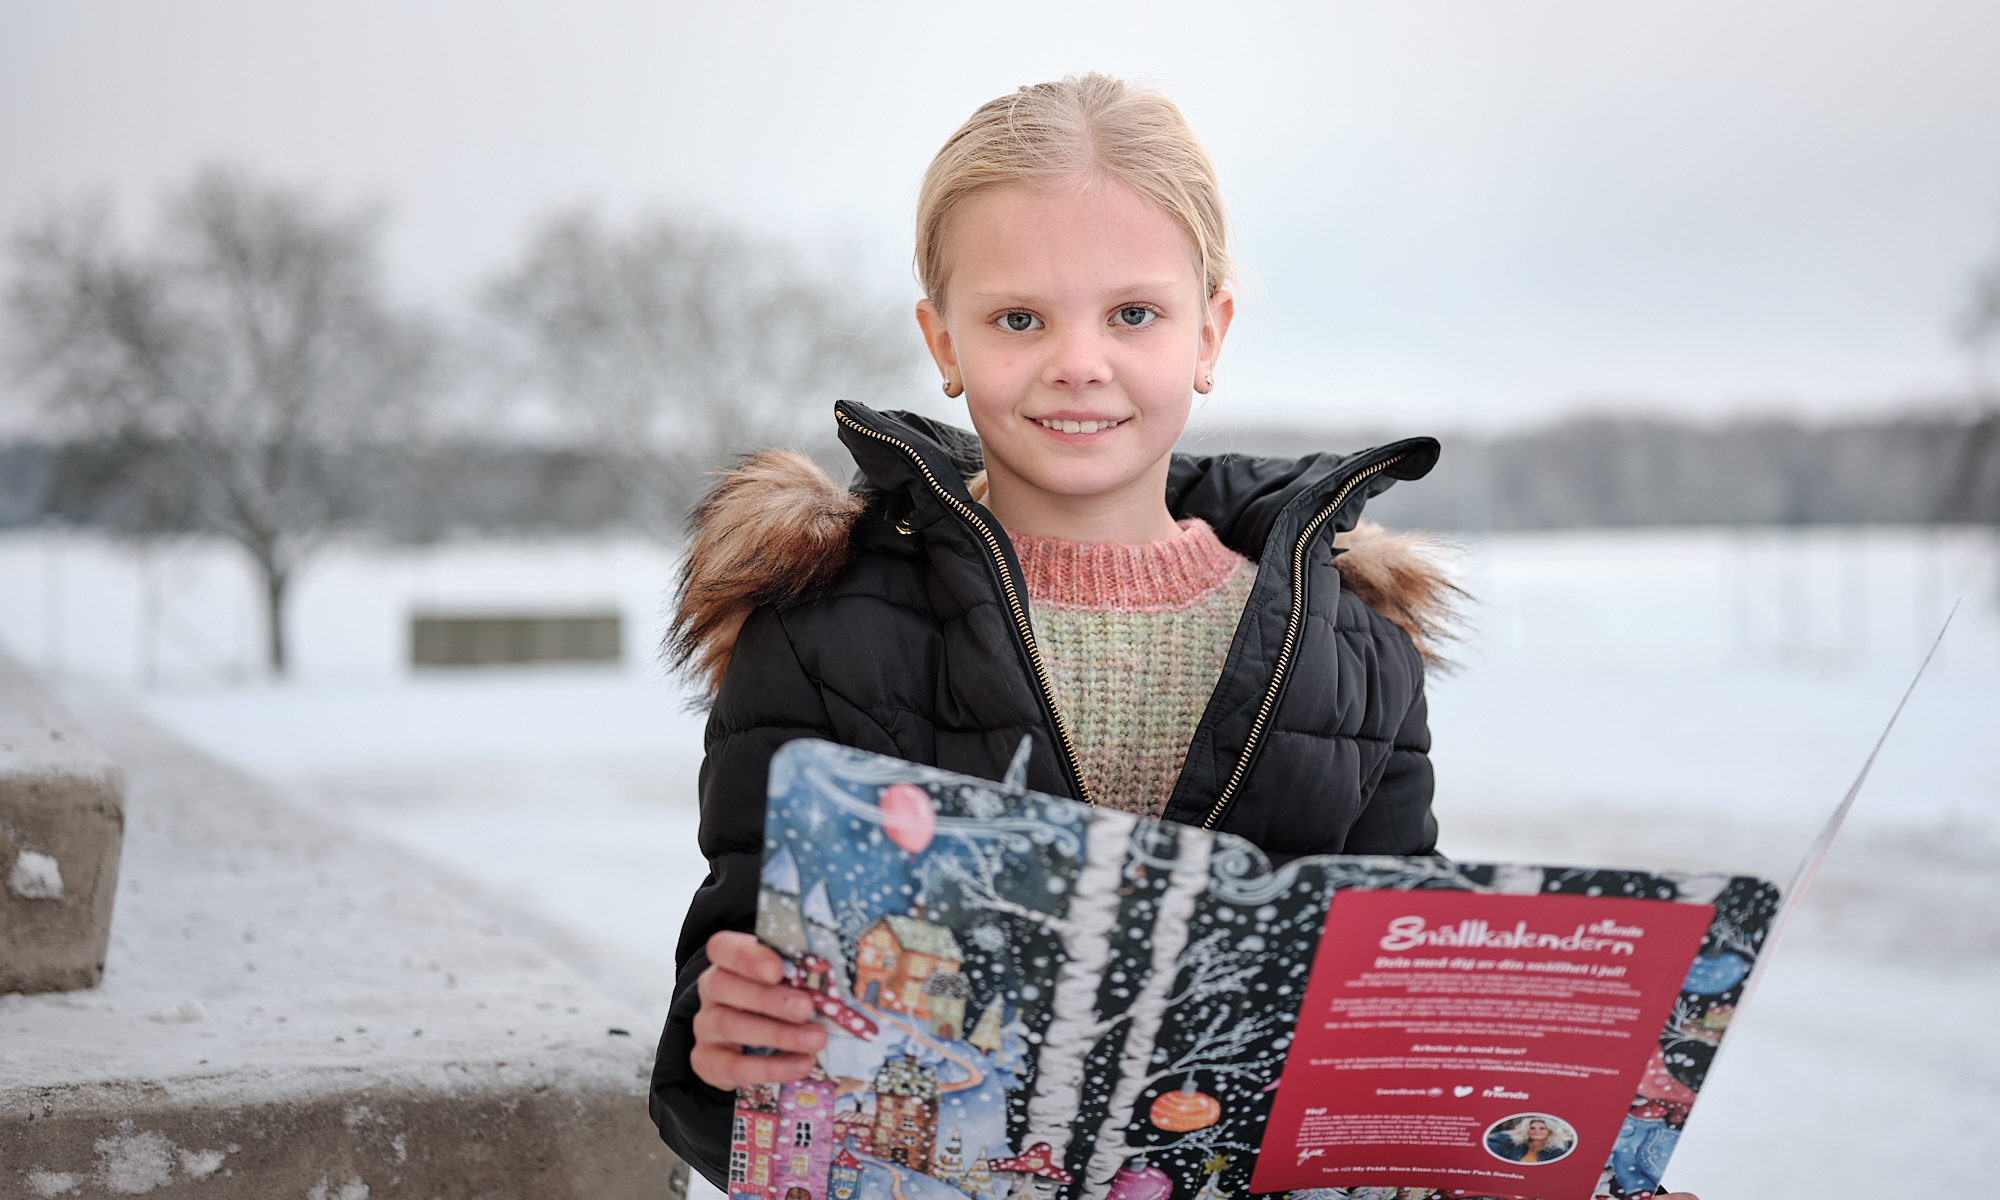 Child at school opening a Snällkalender